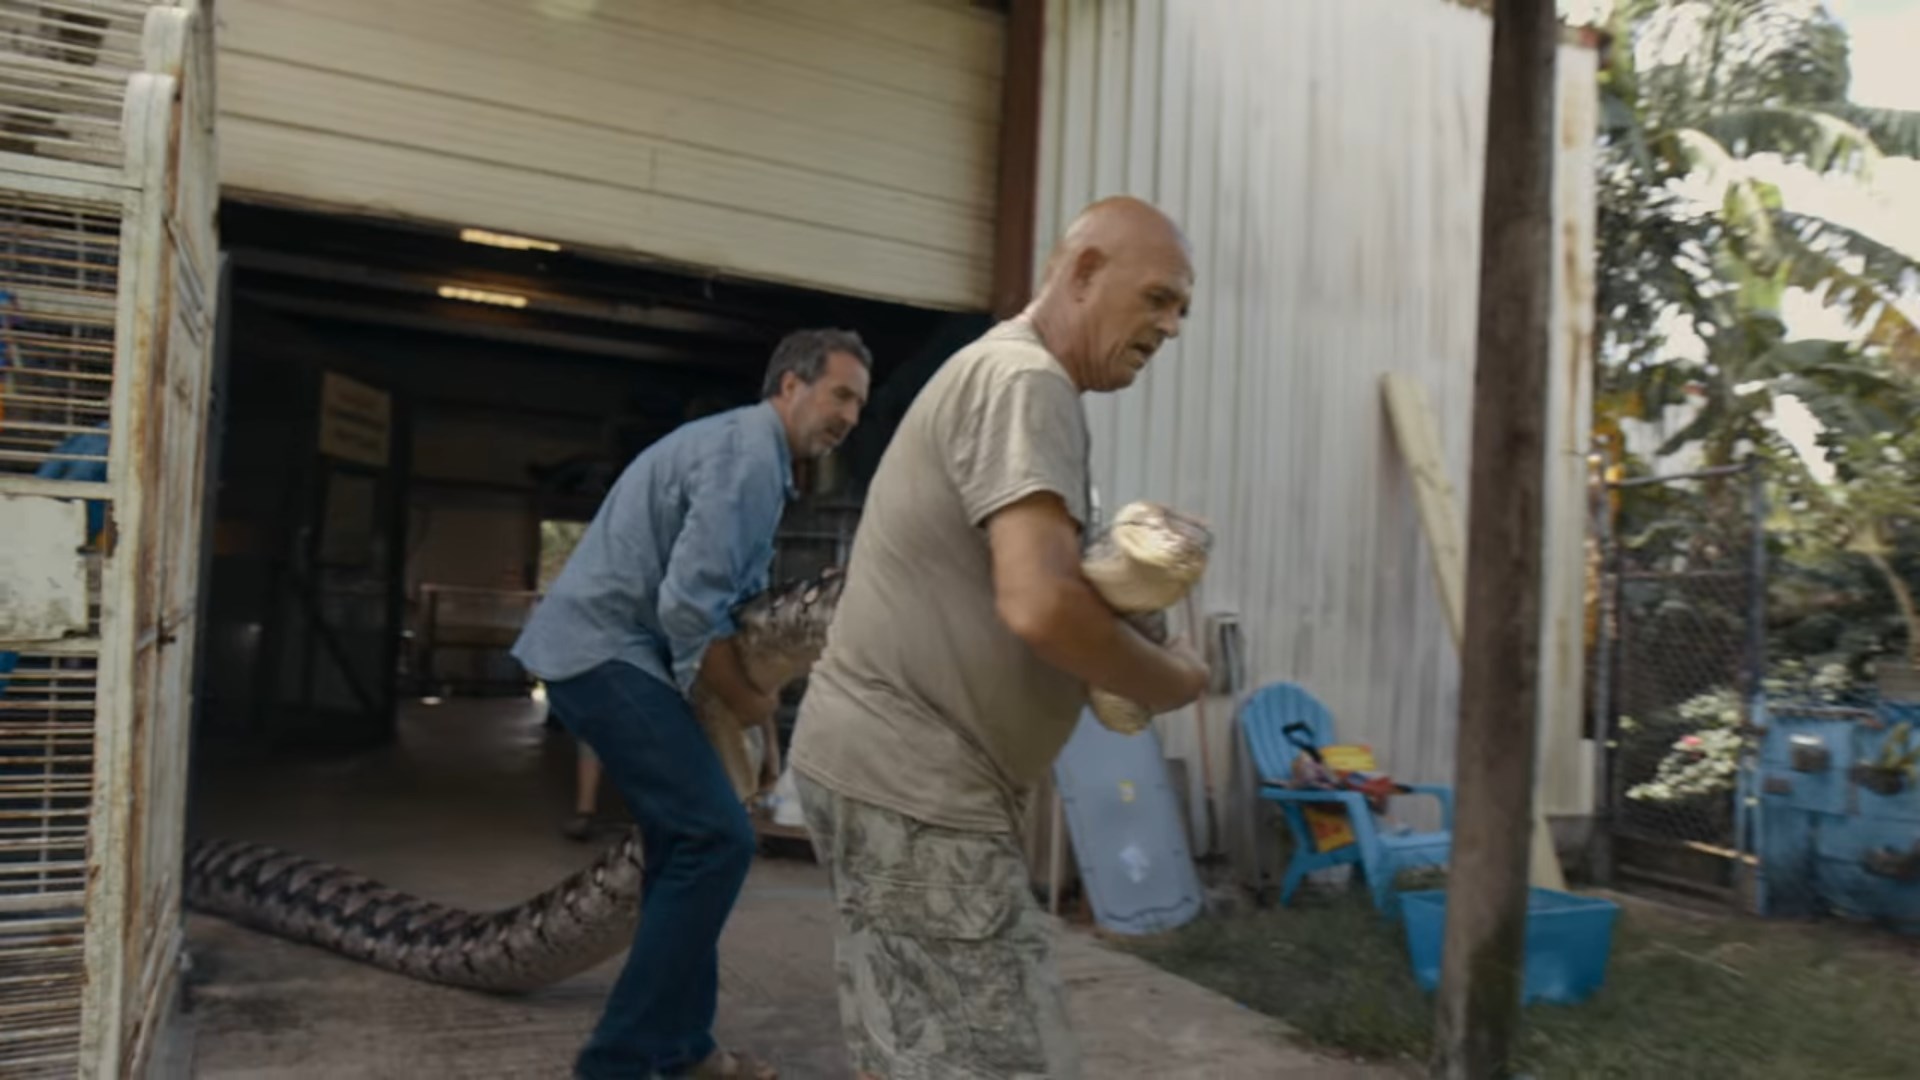 Reżyser Eric Goode (drugi plan) z 23-letnim wężem - Tygrysy, ludzie i władza – serialowe narkotyki Netflixa - dokument - 2020-05-12